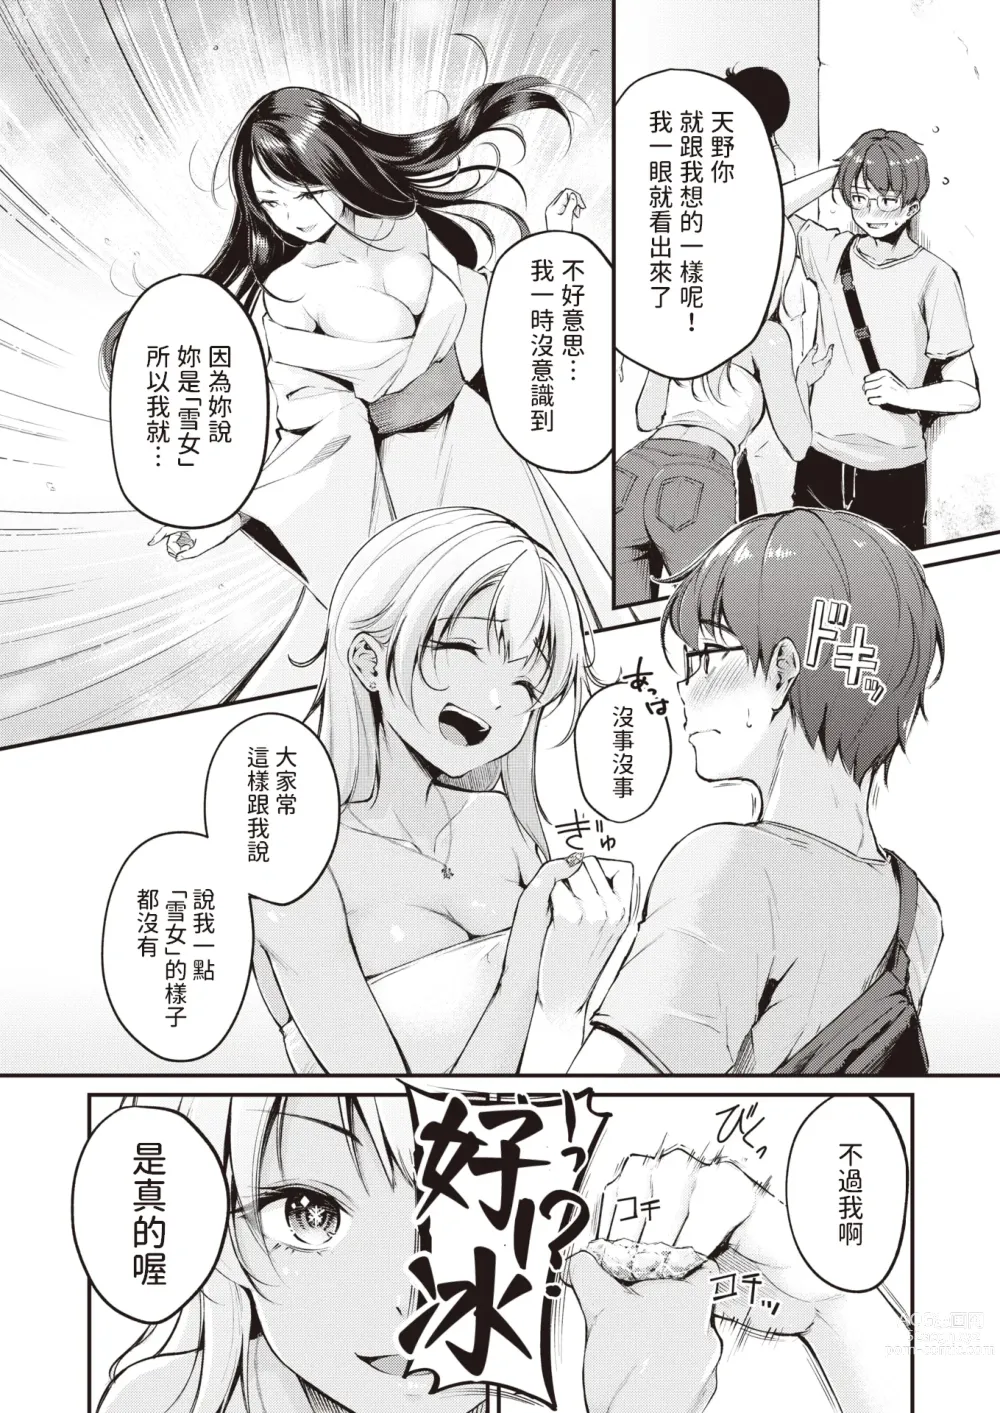 Page 3 of manga Tsumetai Kimi to Atsui Game o